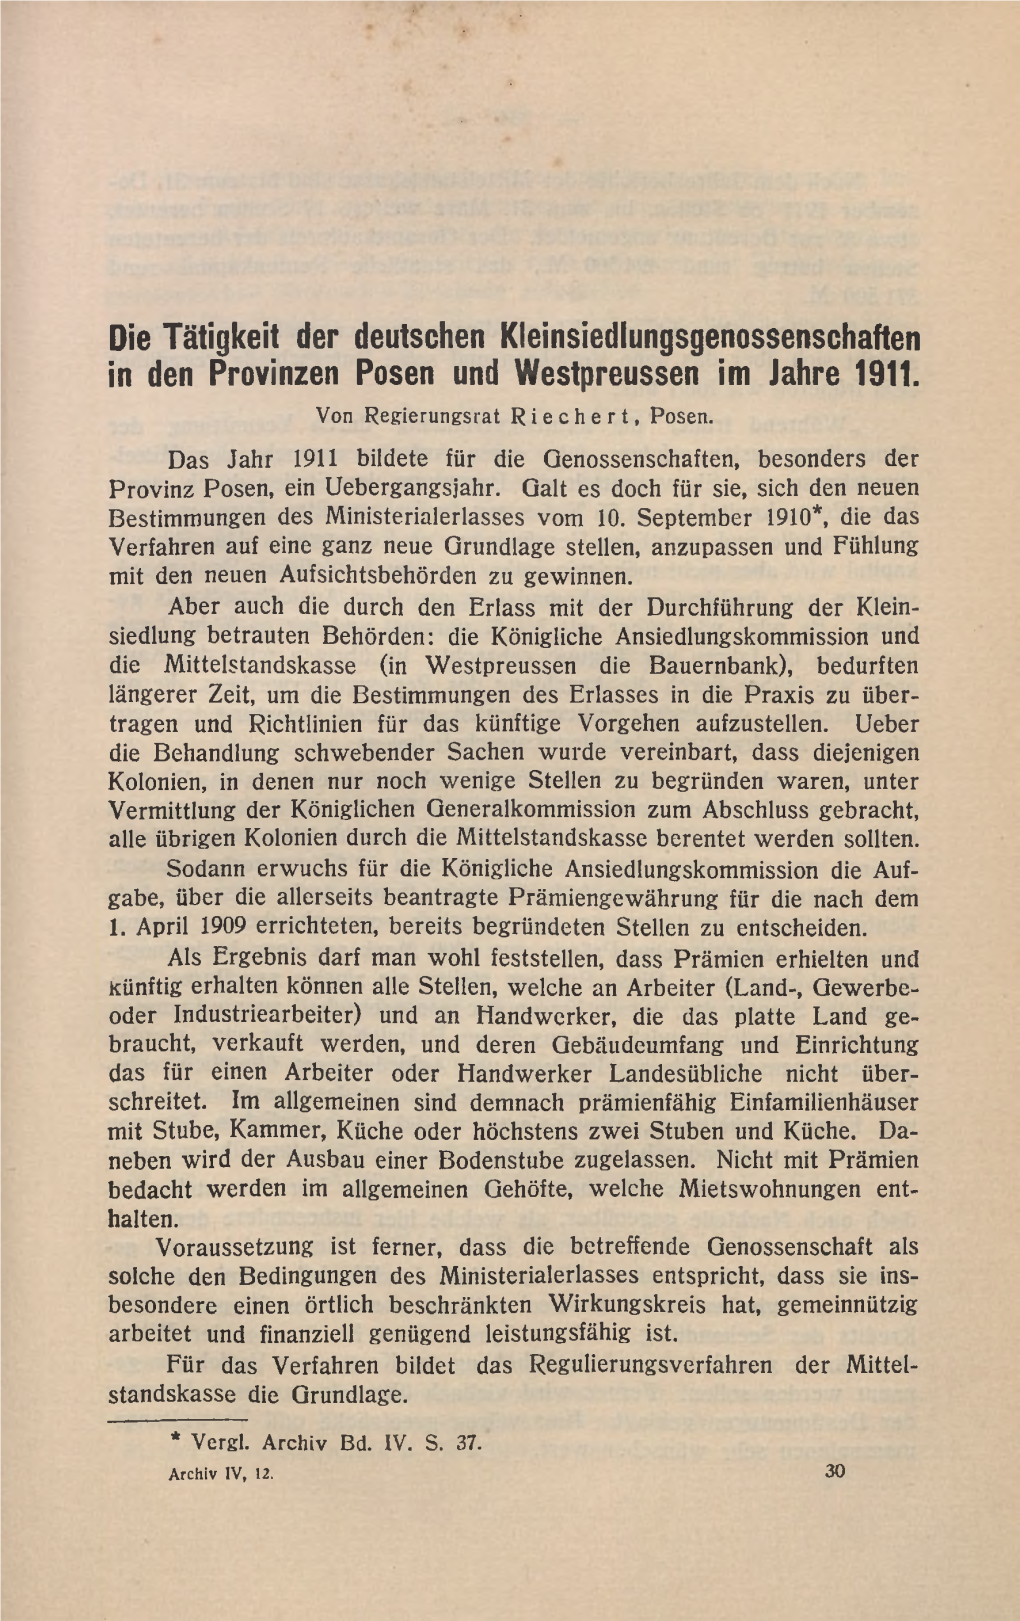 Die Tätigkeit Der Deutschen Kleinsiedlungsgenossenschaften in Den Provinzen Posen Und Westpreussen Im Jahre 1911